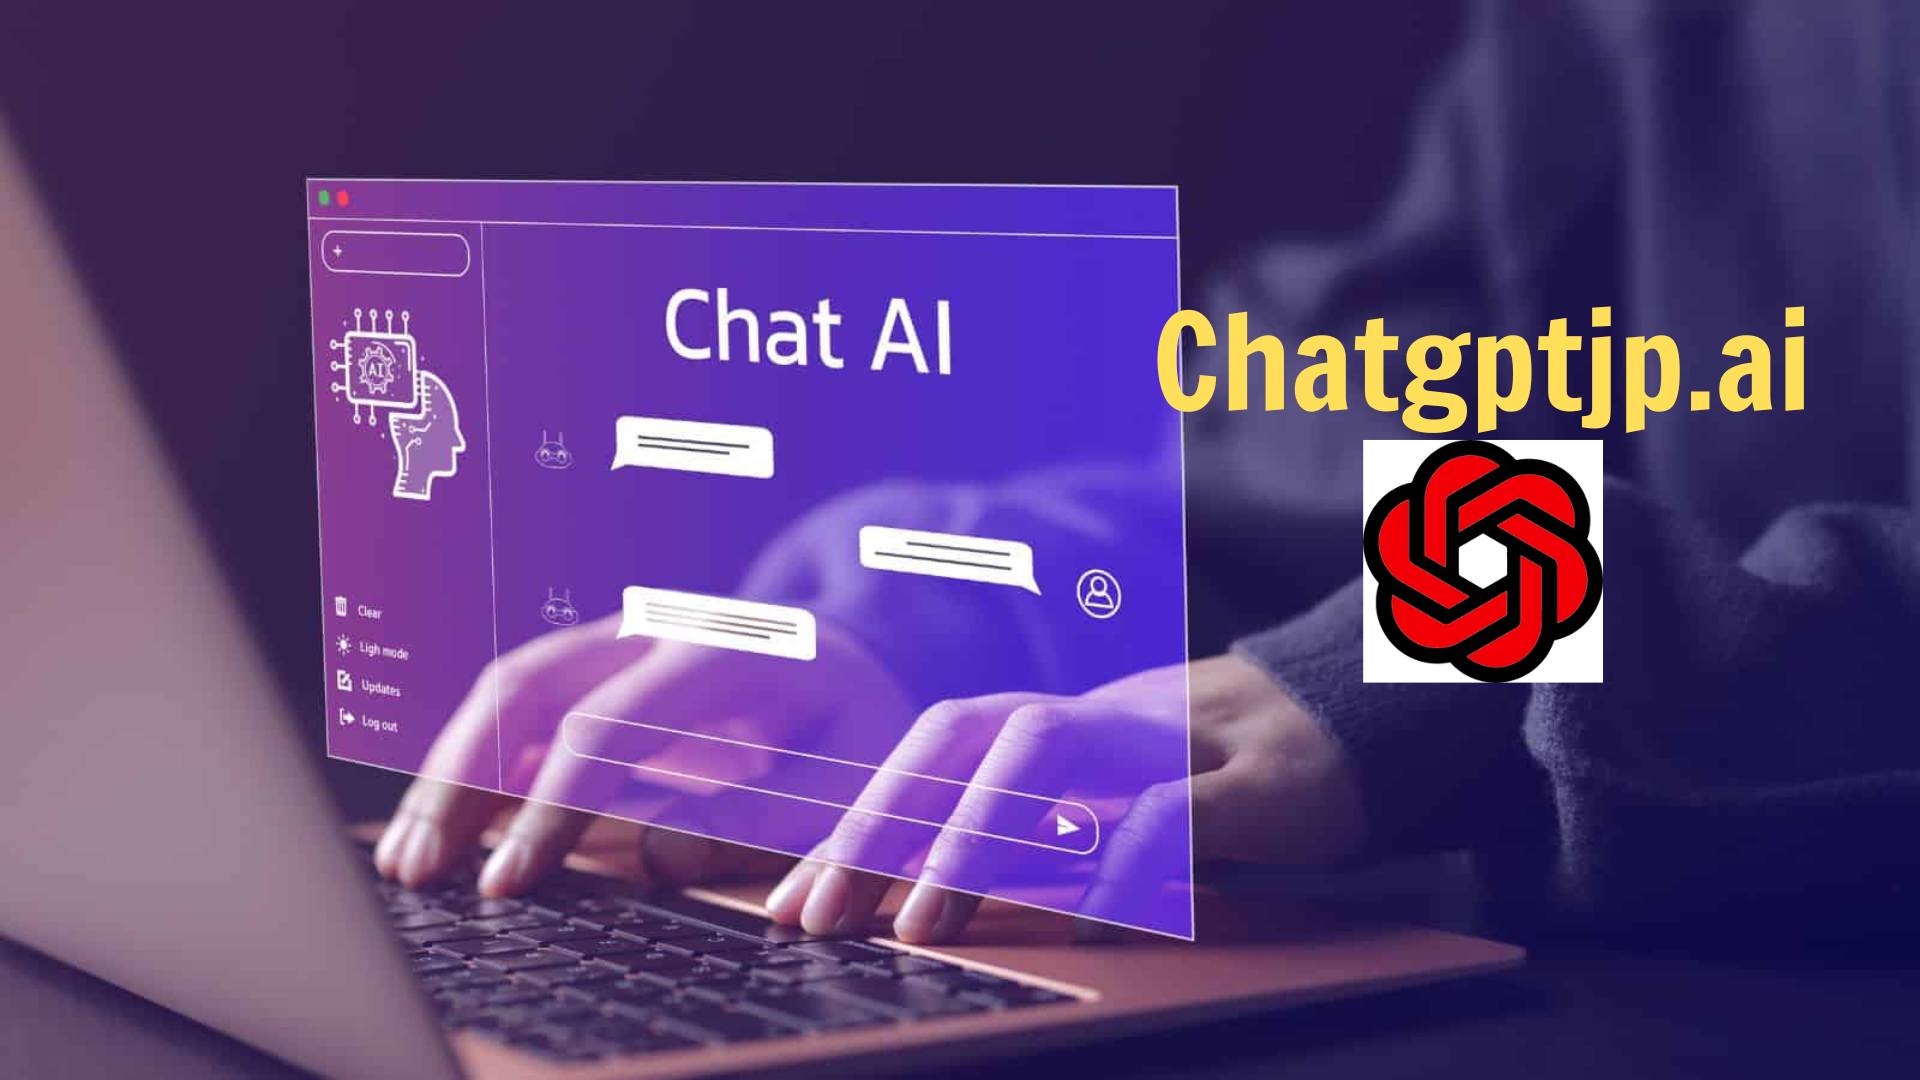 ChatGPTはどこで使用できますか?